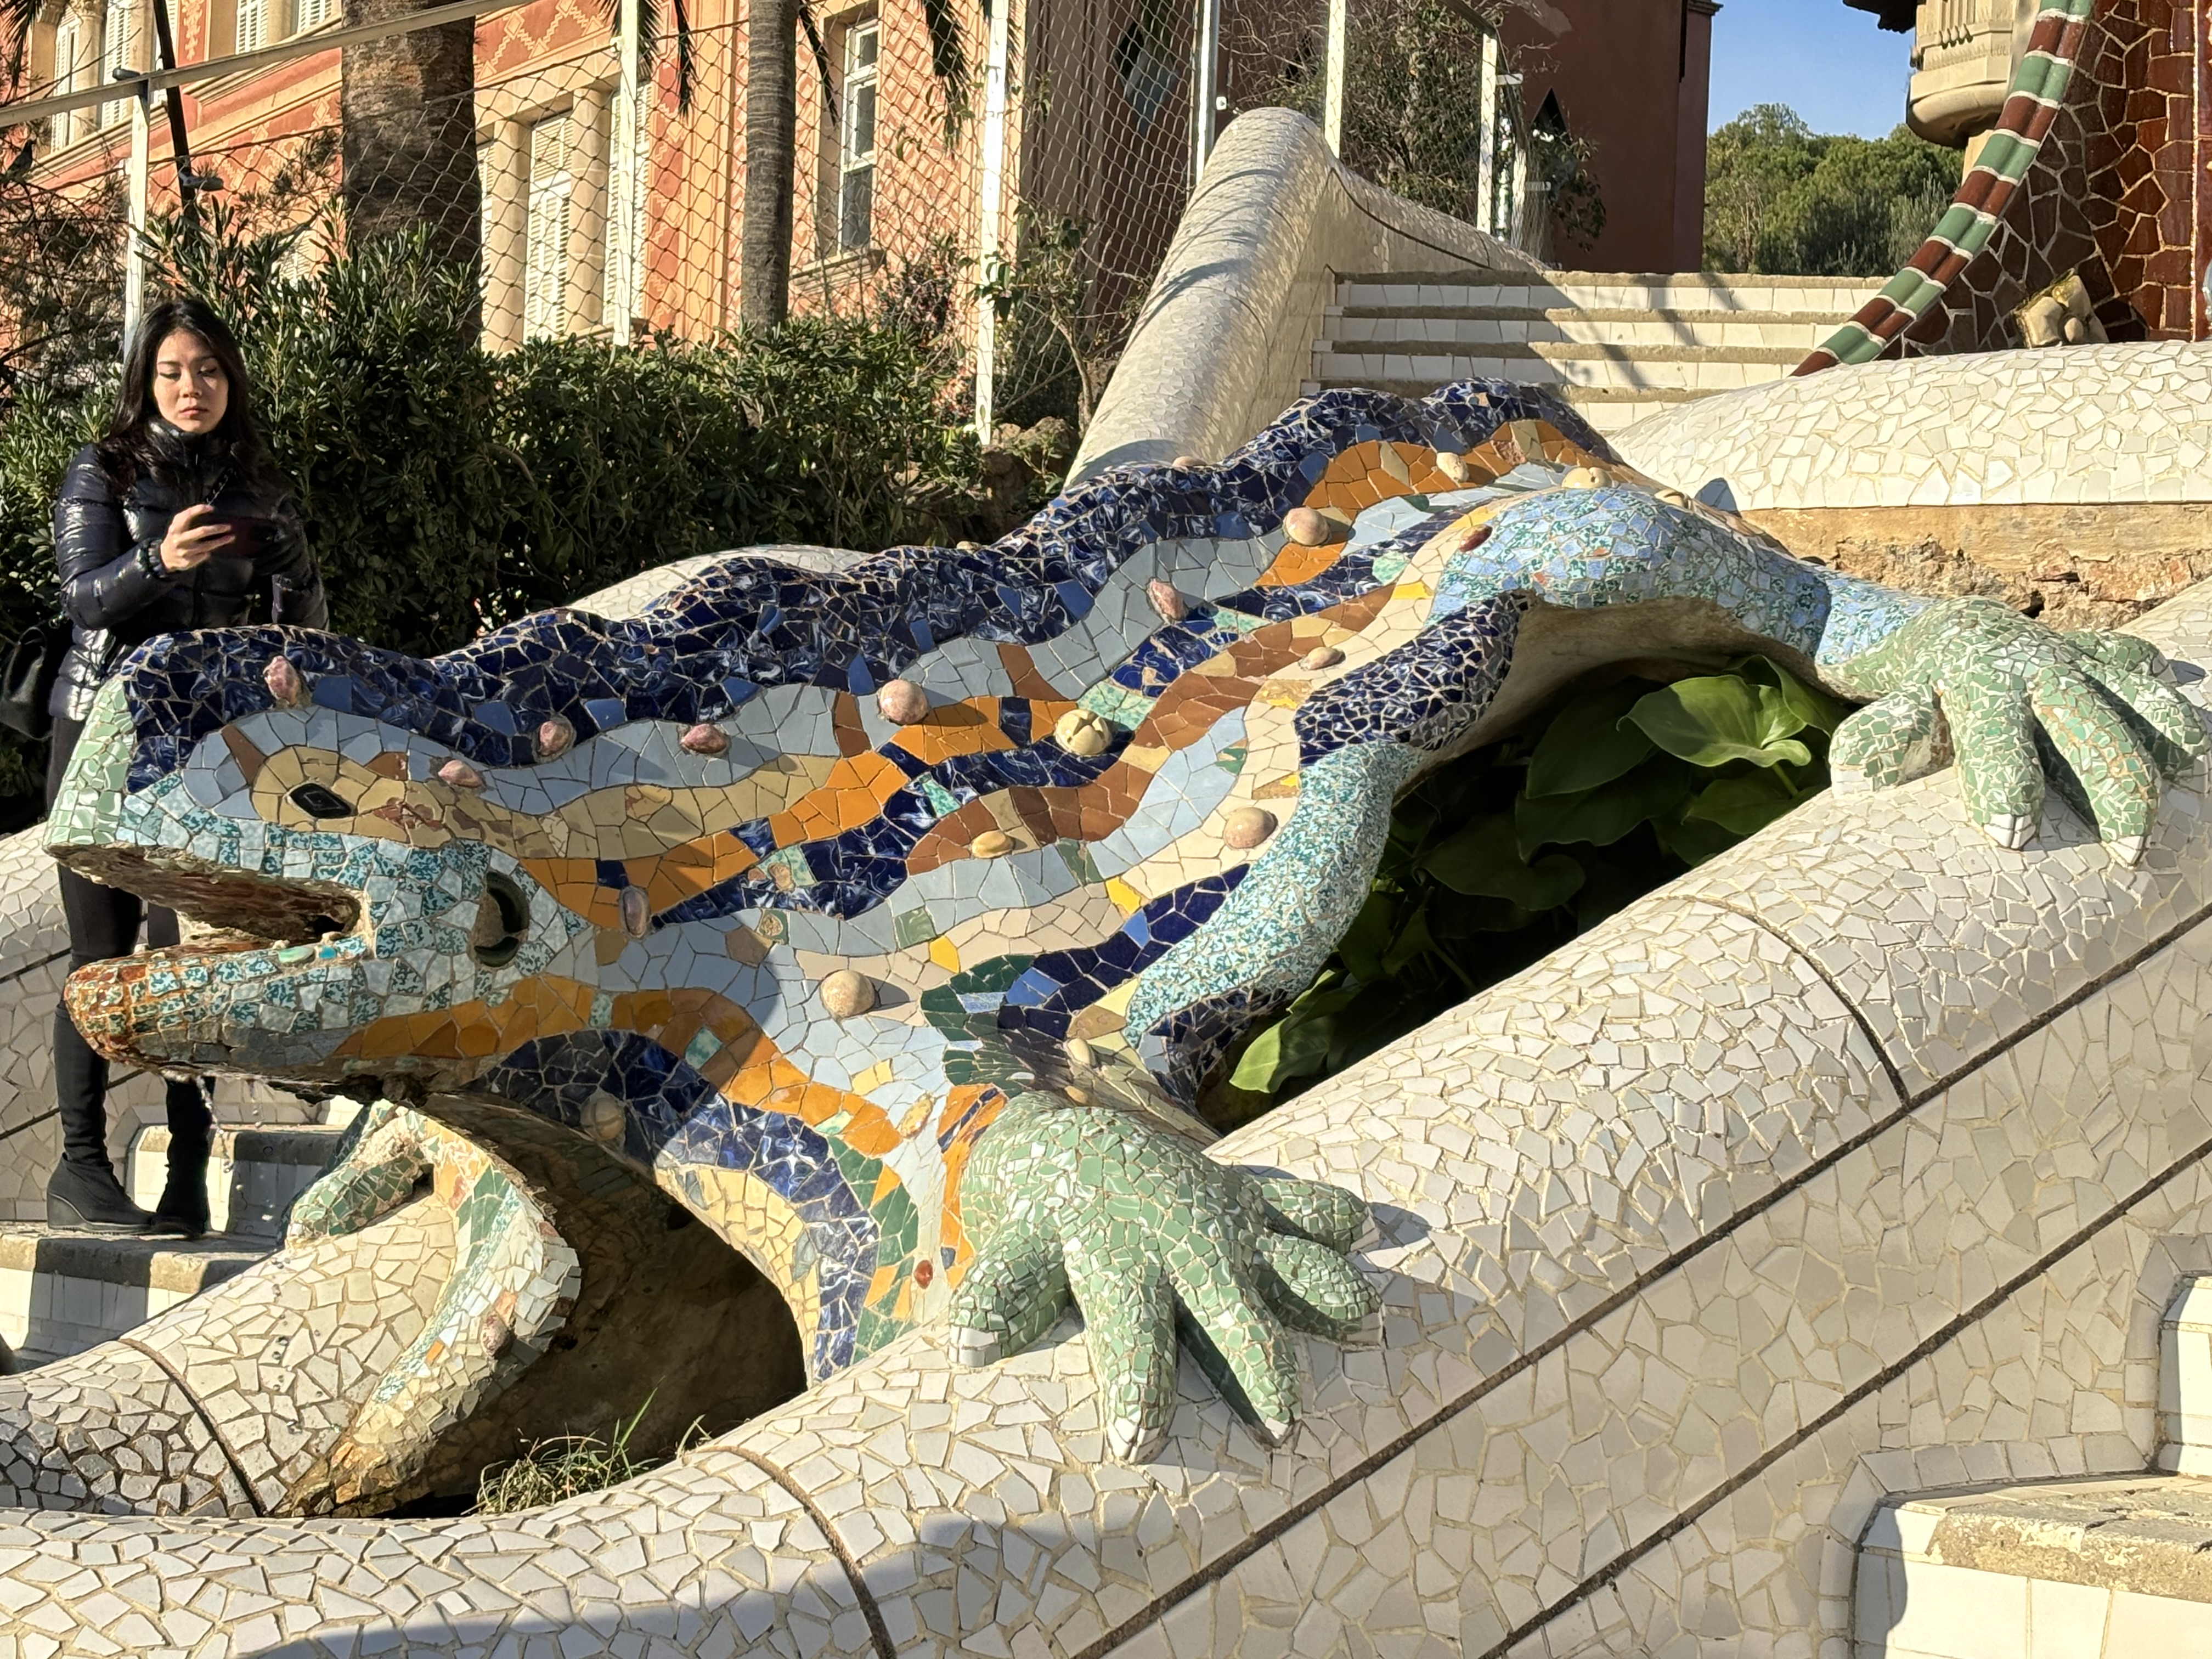 The famous lizard in Park Güell.